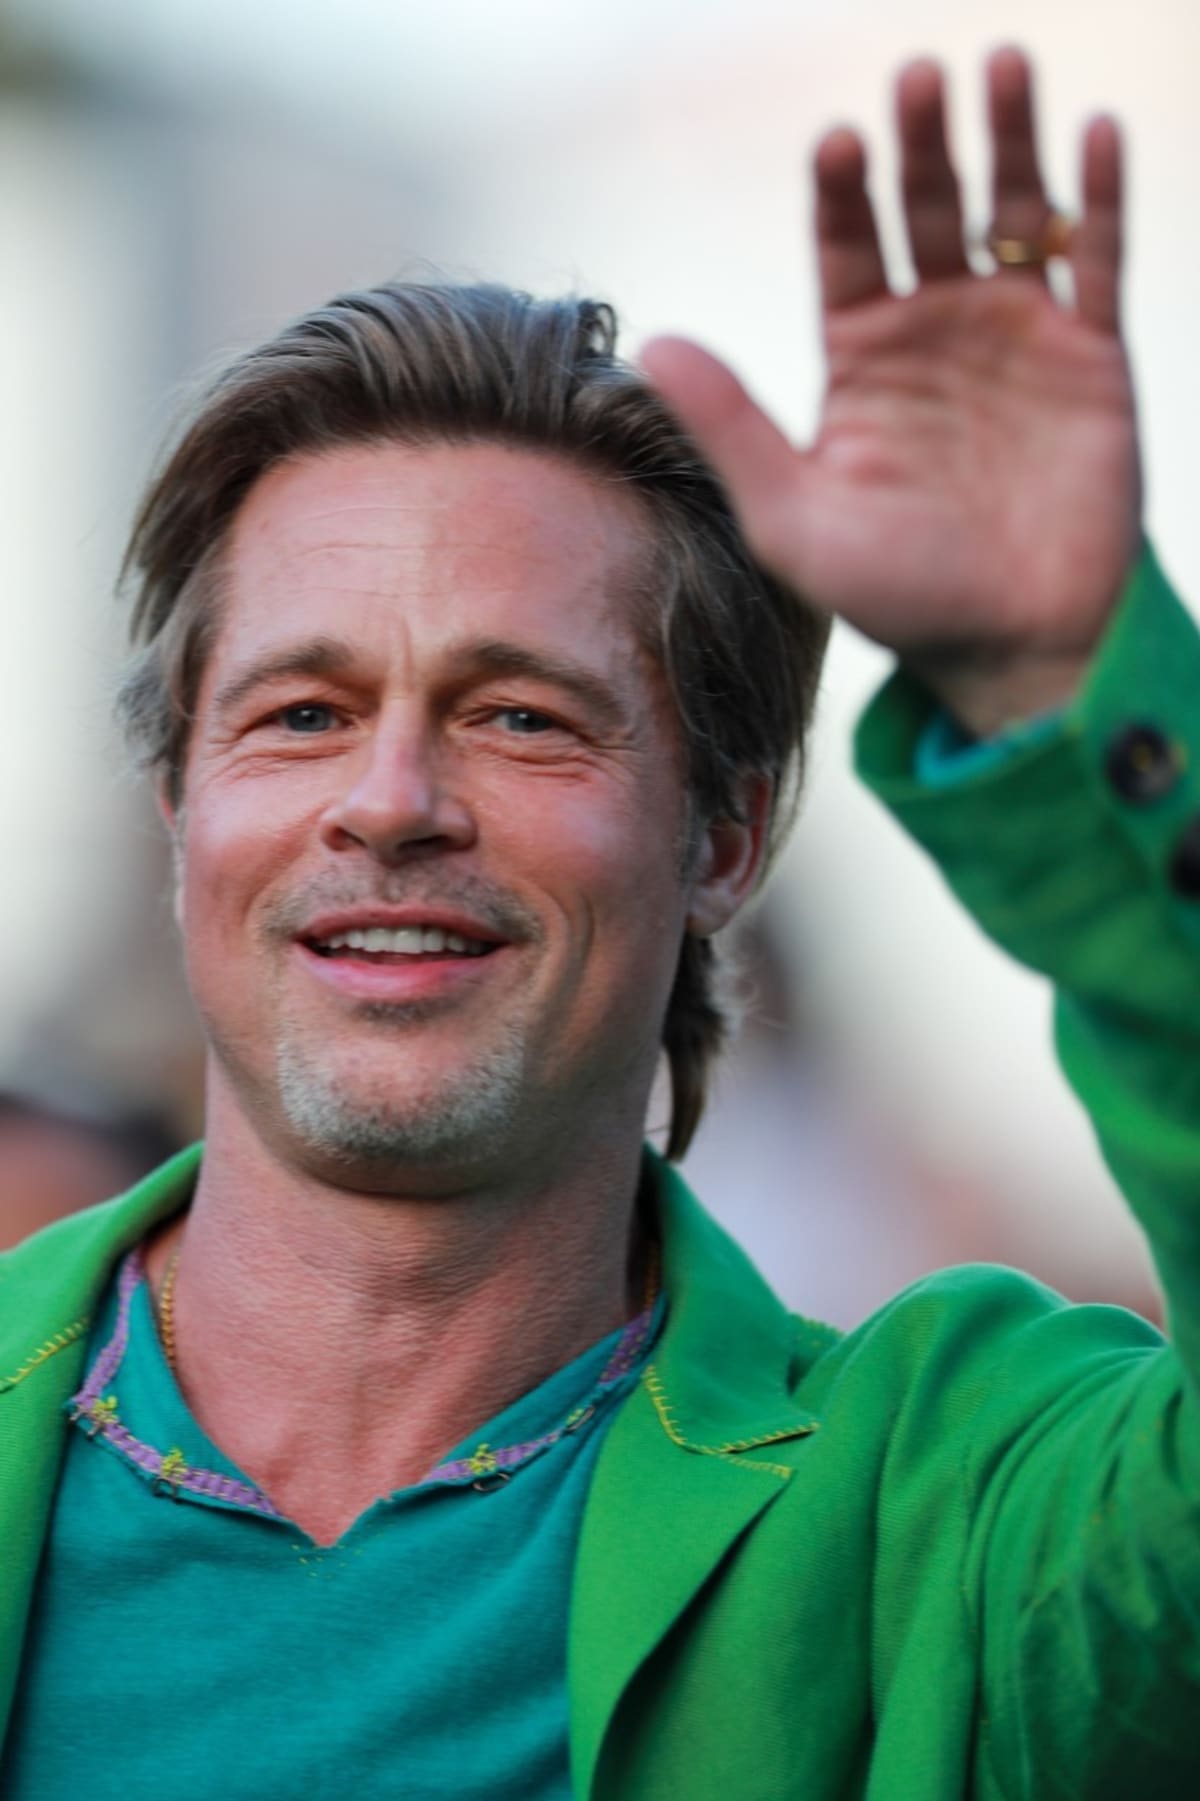 Šarmantní americký herec Brad Pitt přijel na losangelskou premiéru svého nového akčního filmu Bullet Train v zelinkavém kompletu. 